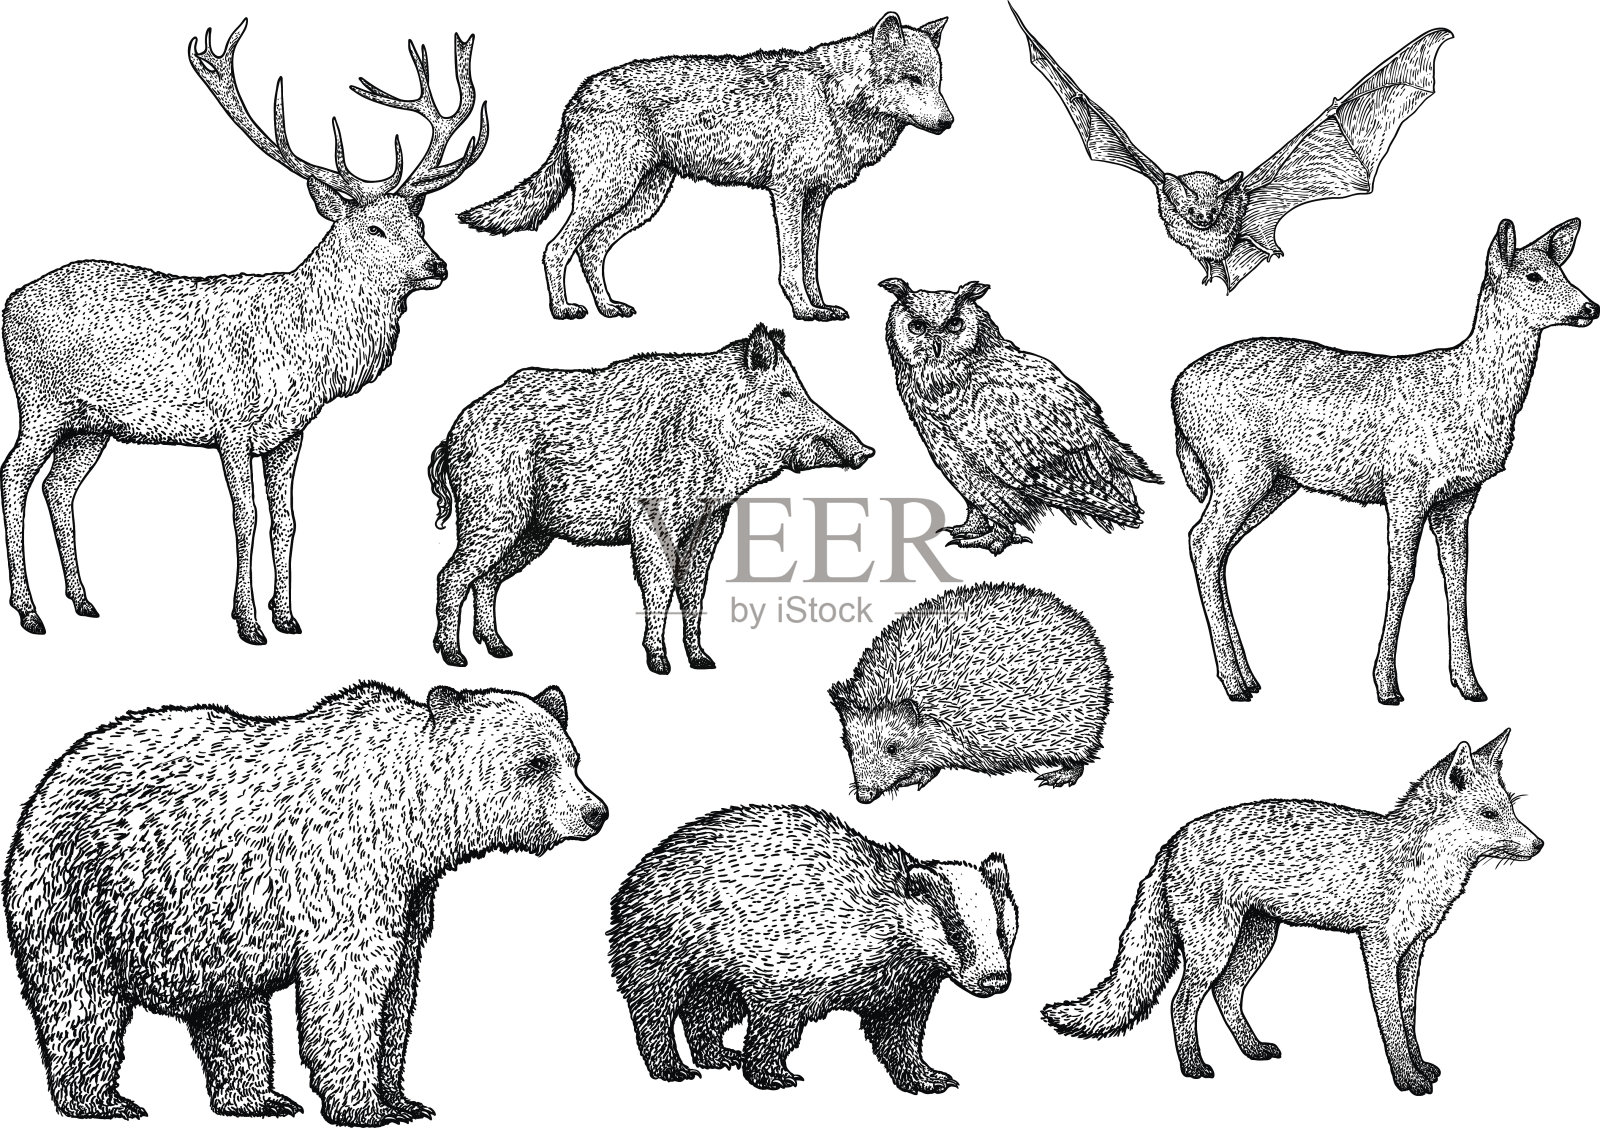 森林动物插画、素描、雕刻、水墨、线条艺术、矢量设计元素图片